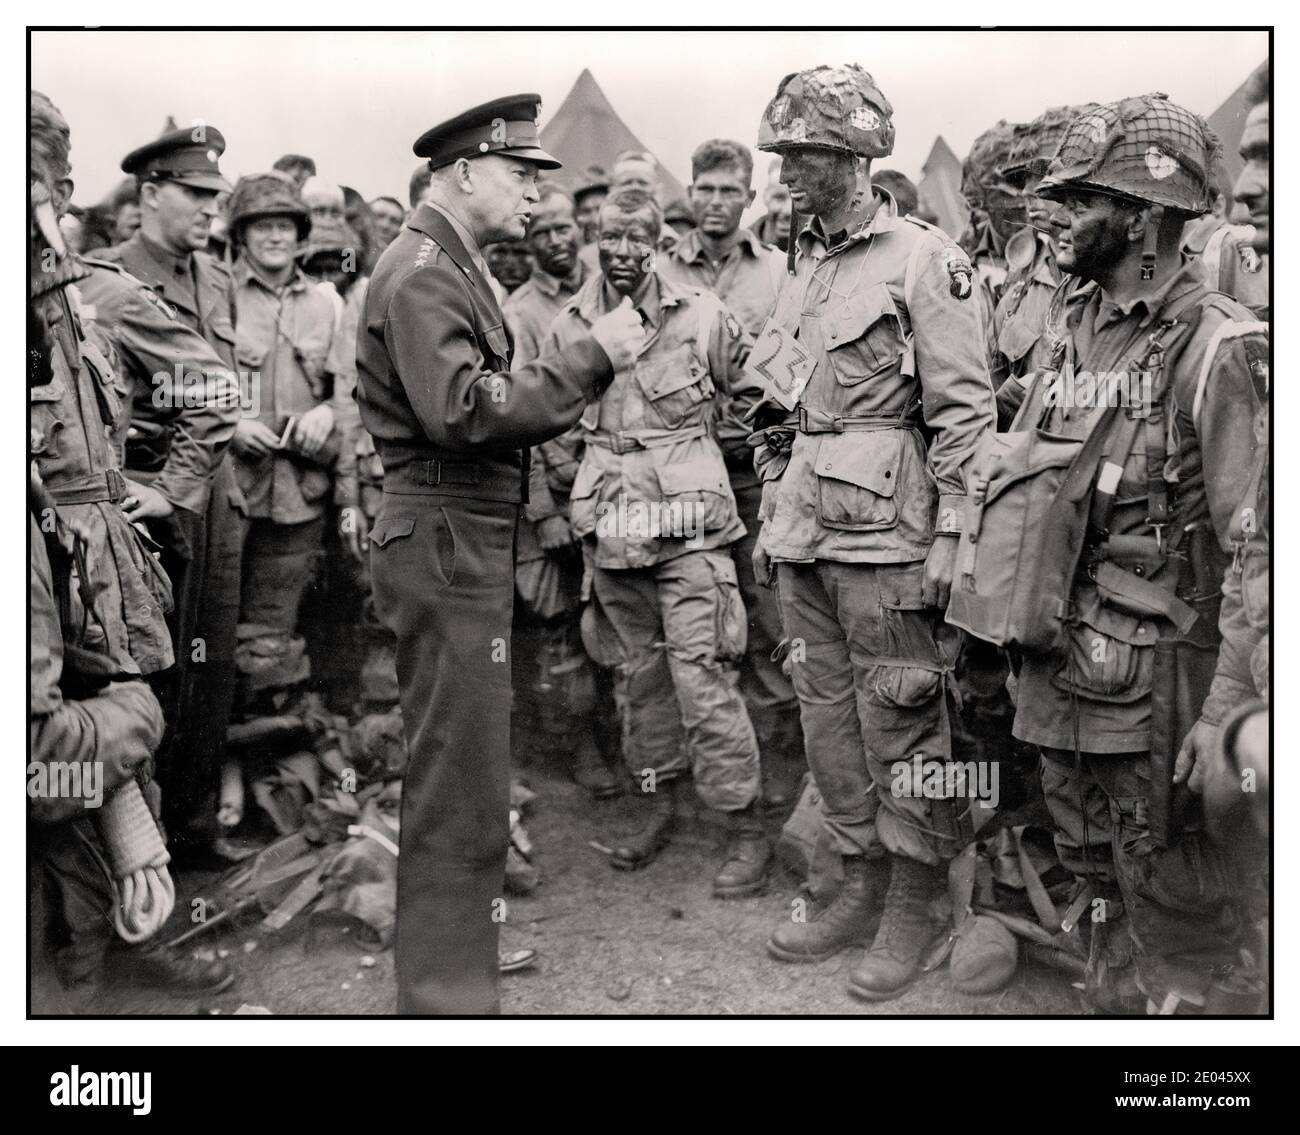 WW2 D-Day archive le général Dwight D. Eisenhower donne l'ordre du jour, 'victoire complète--rien d'autre' aux parachutistes quelque part en Angleterre, juste avant qu'ils ne prennent leurs avions pour participer à la première attaque de l'invasion du continent de l'Europe 1944 juin 6 - Eisenhower, Dwight D.-- (Dwight David),--1890-1969--Service militaire - États-Unis.--Armée.--Régiment d'infanterie de parachute, 502e-- - Guerre mondiale, 1939-1945--personnel militaire--américain--Angleterre Banque D'Images